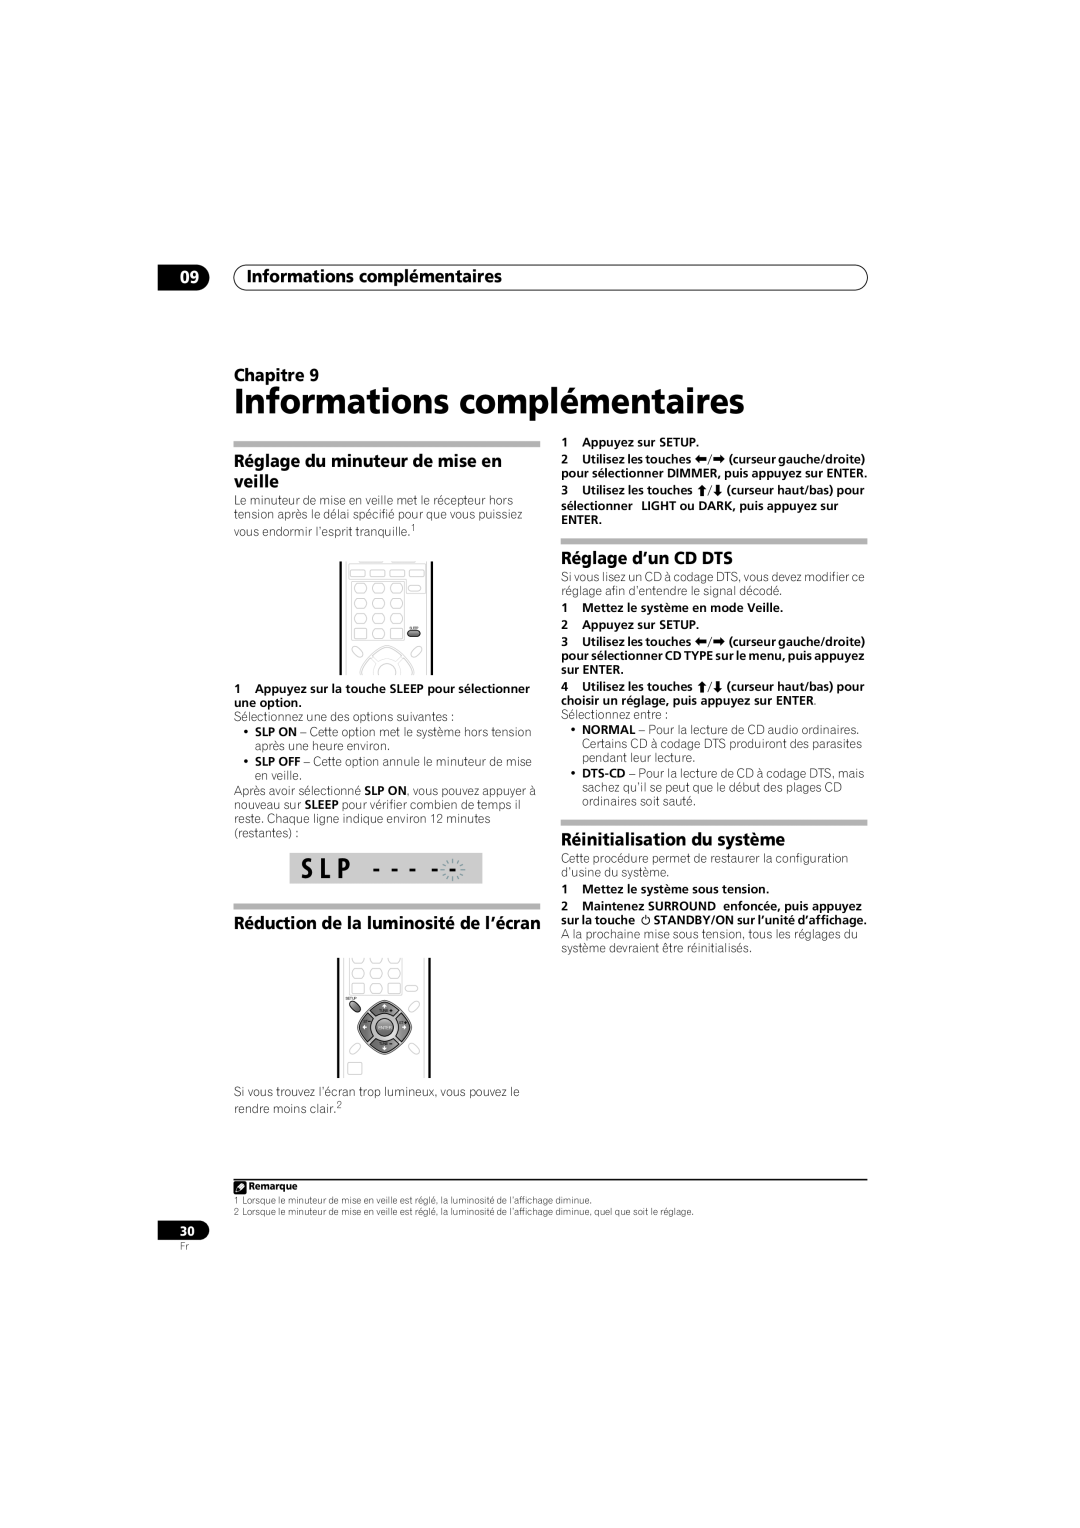 Pioneer HTS-260 09Informations complémentaires Chapitre, Réglage du minuteur de mise en veille, Réglage d’un CD DTS 